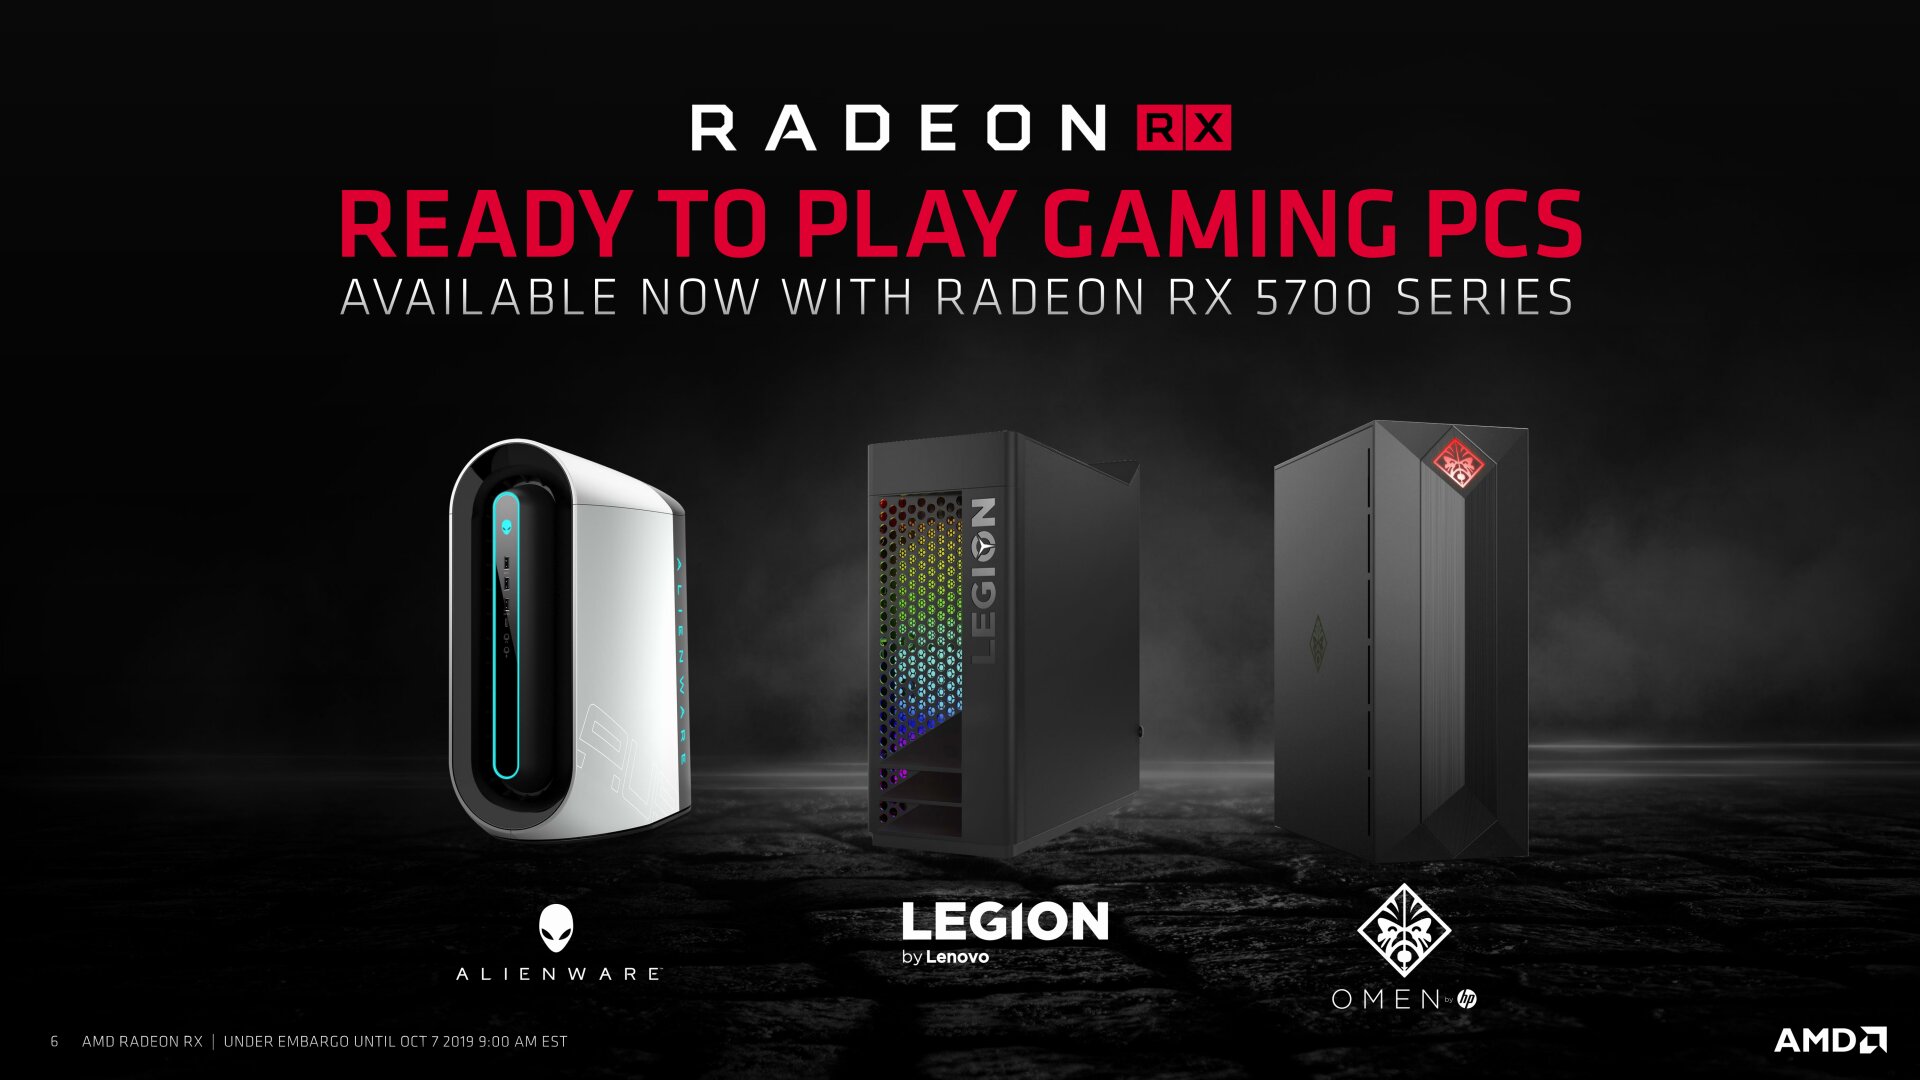 AMD Radeon RX 5500 Präsentation